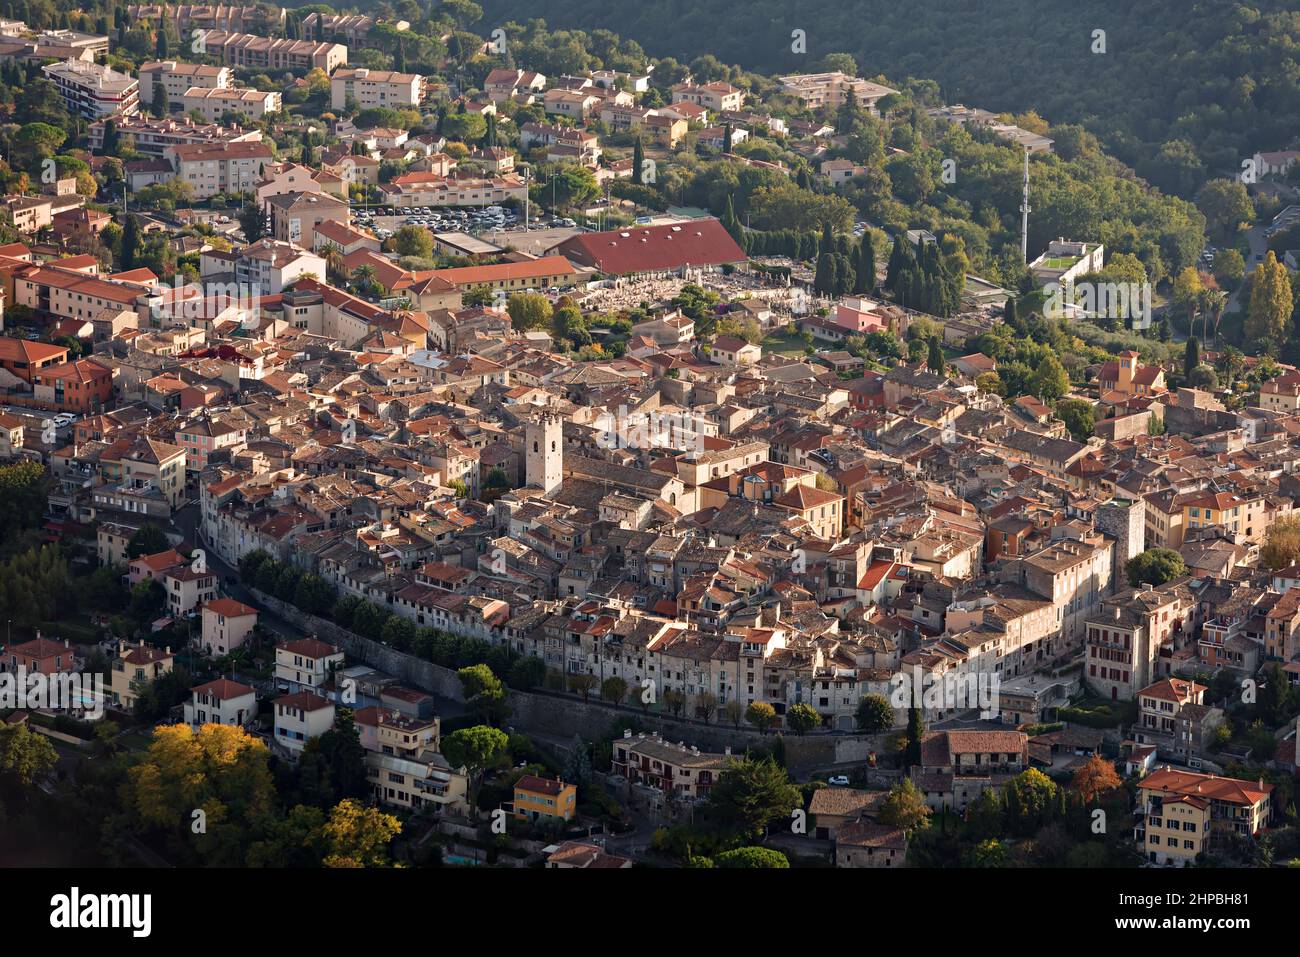 La ciudad medieval de Vence se encuentra en las colinas del departamento de Alpes Marítimos, en la región de Provenza-Alpes-Costa Azul, en el sureste de Francia betwe Foto de stock